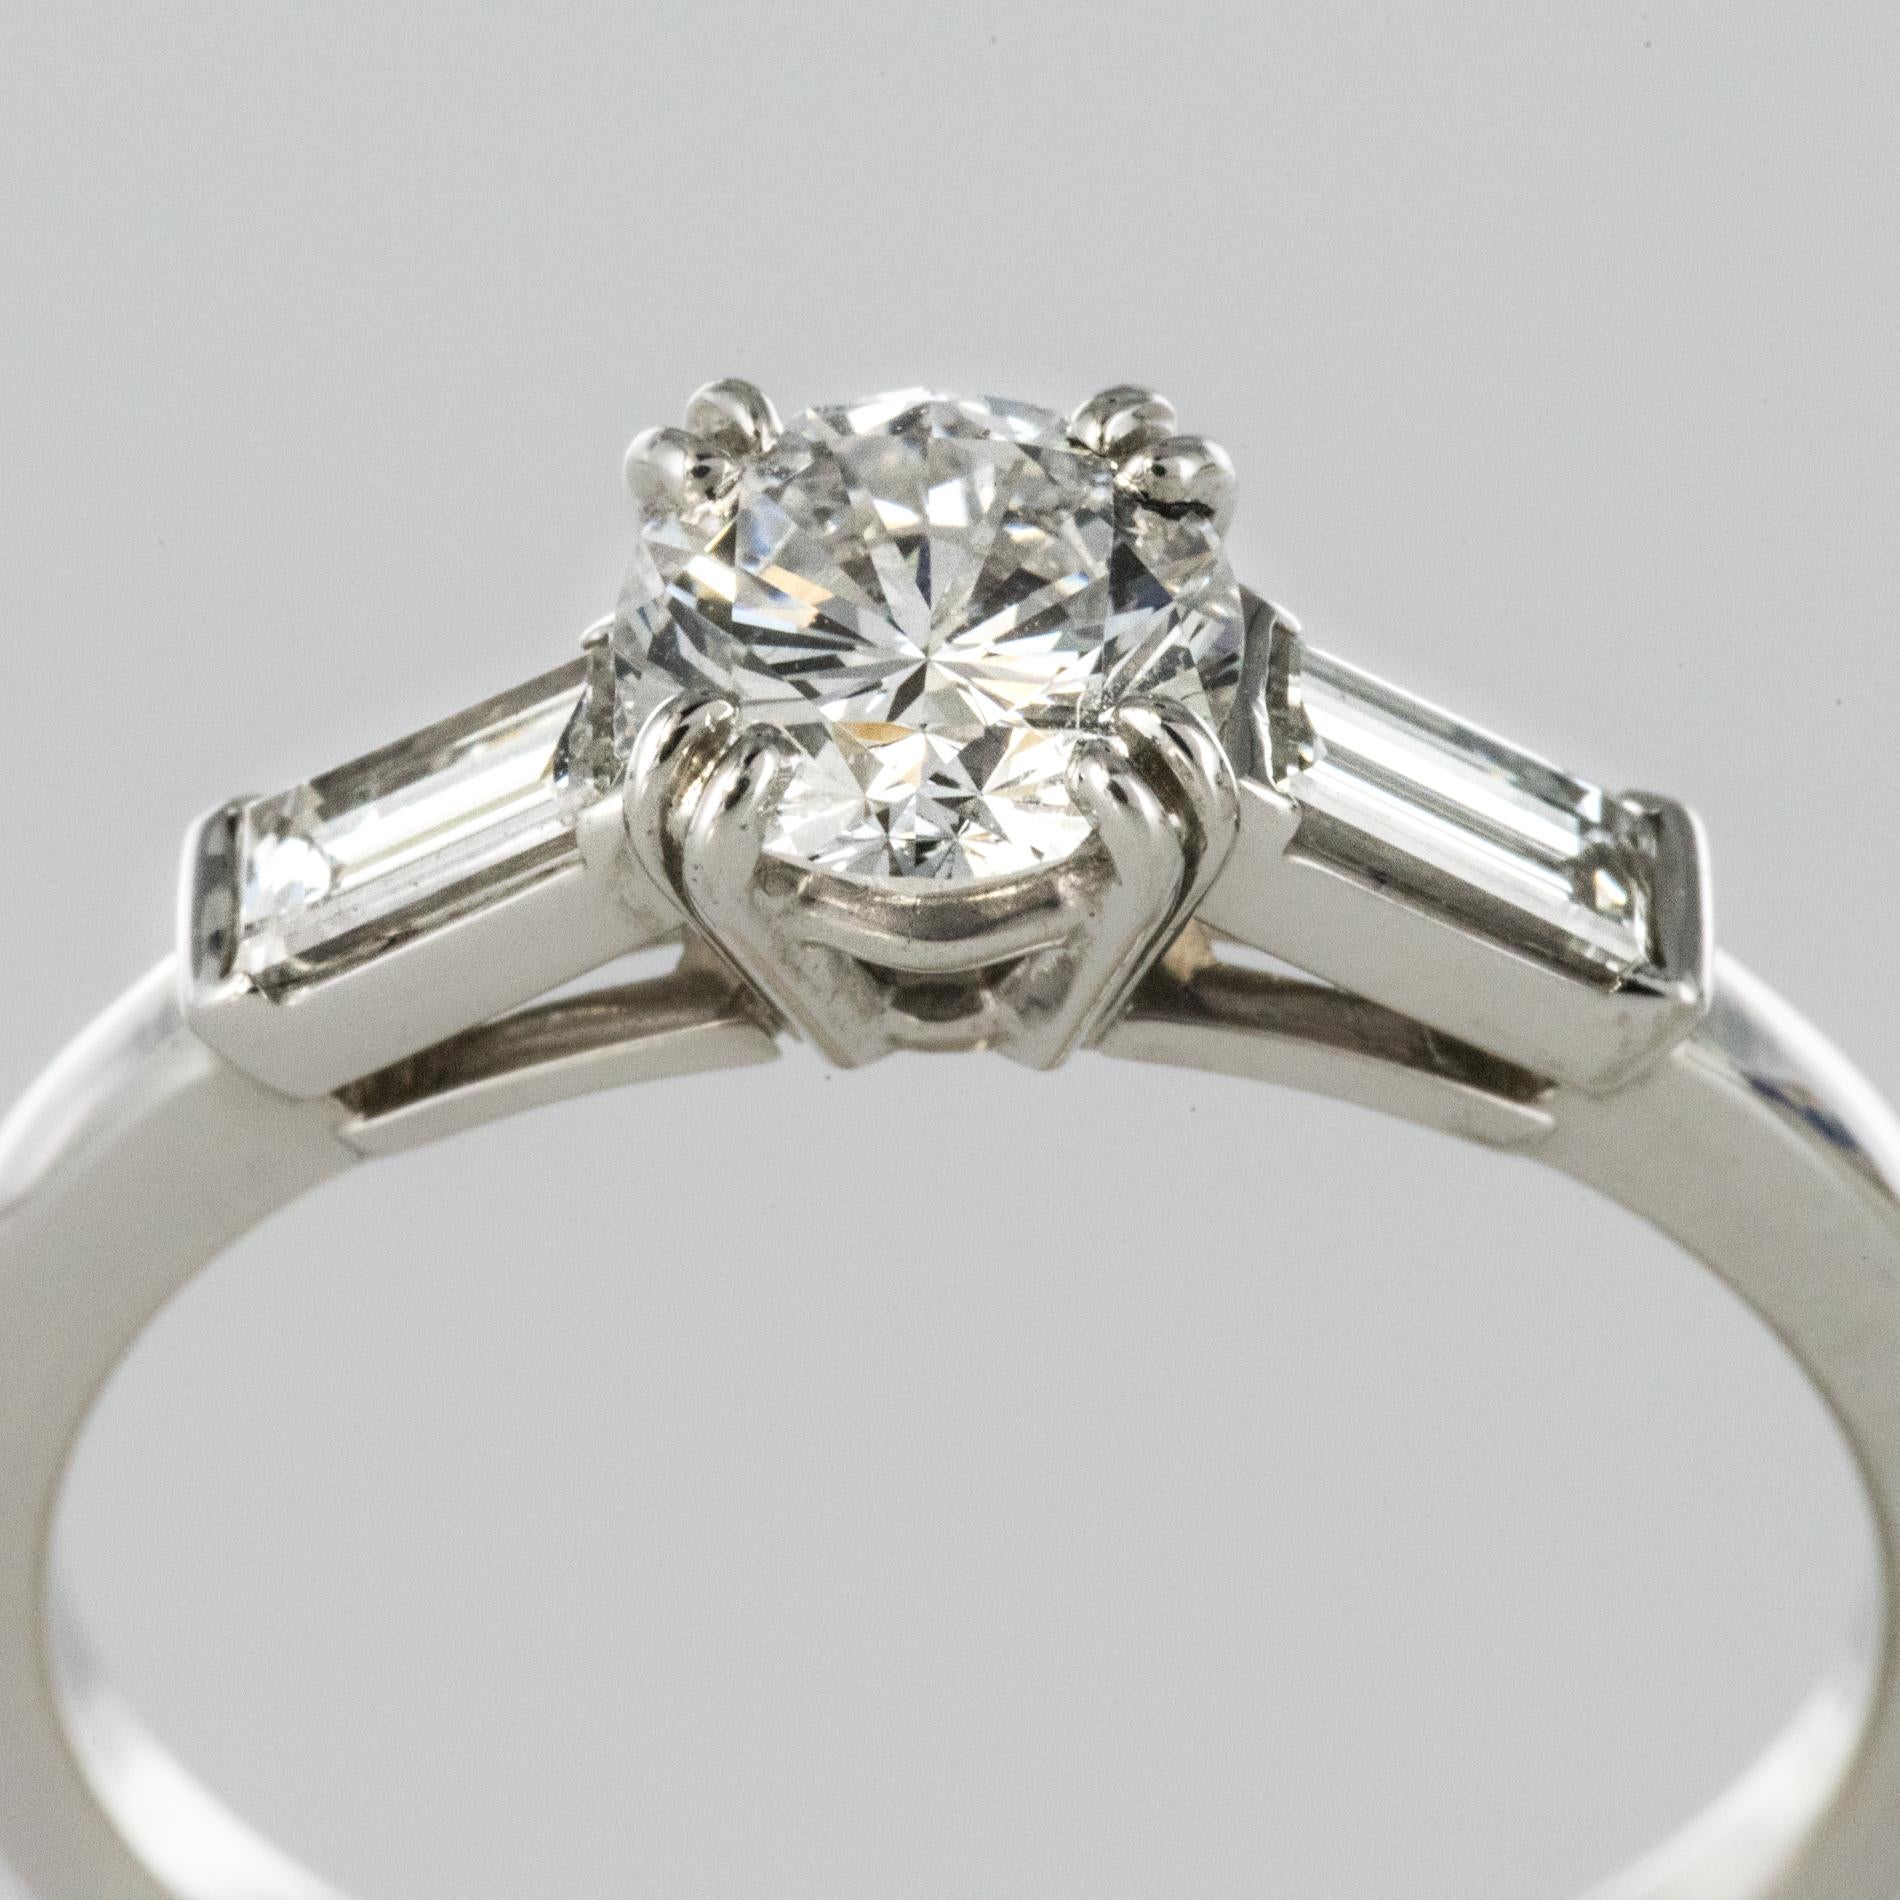 Baguette Cut Art Deco Style 1 Carat Diamond 18 Karat White Gold Solitaire Ring